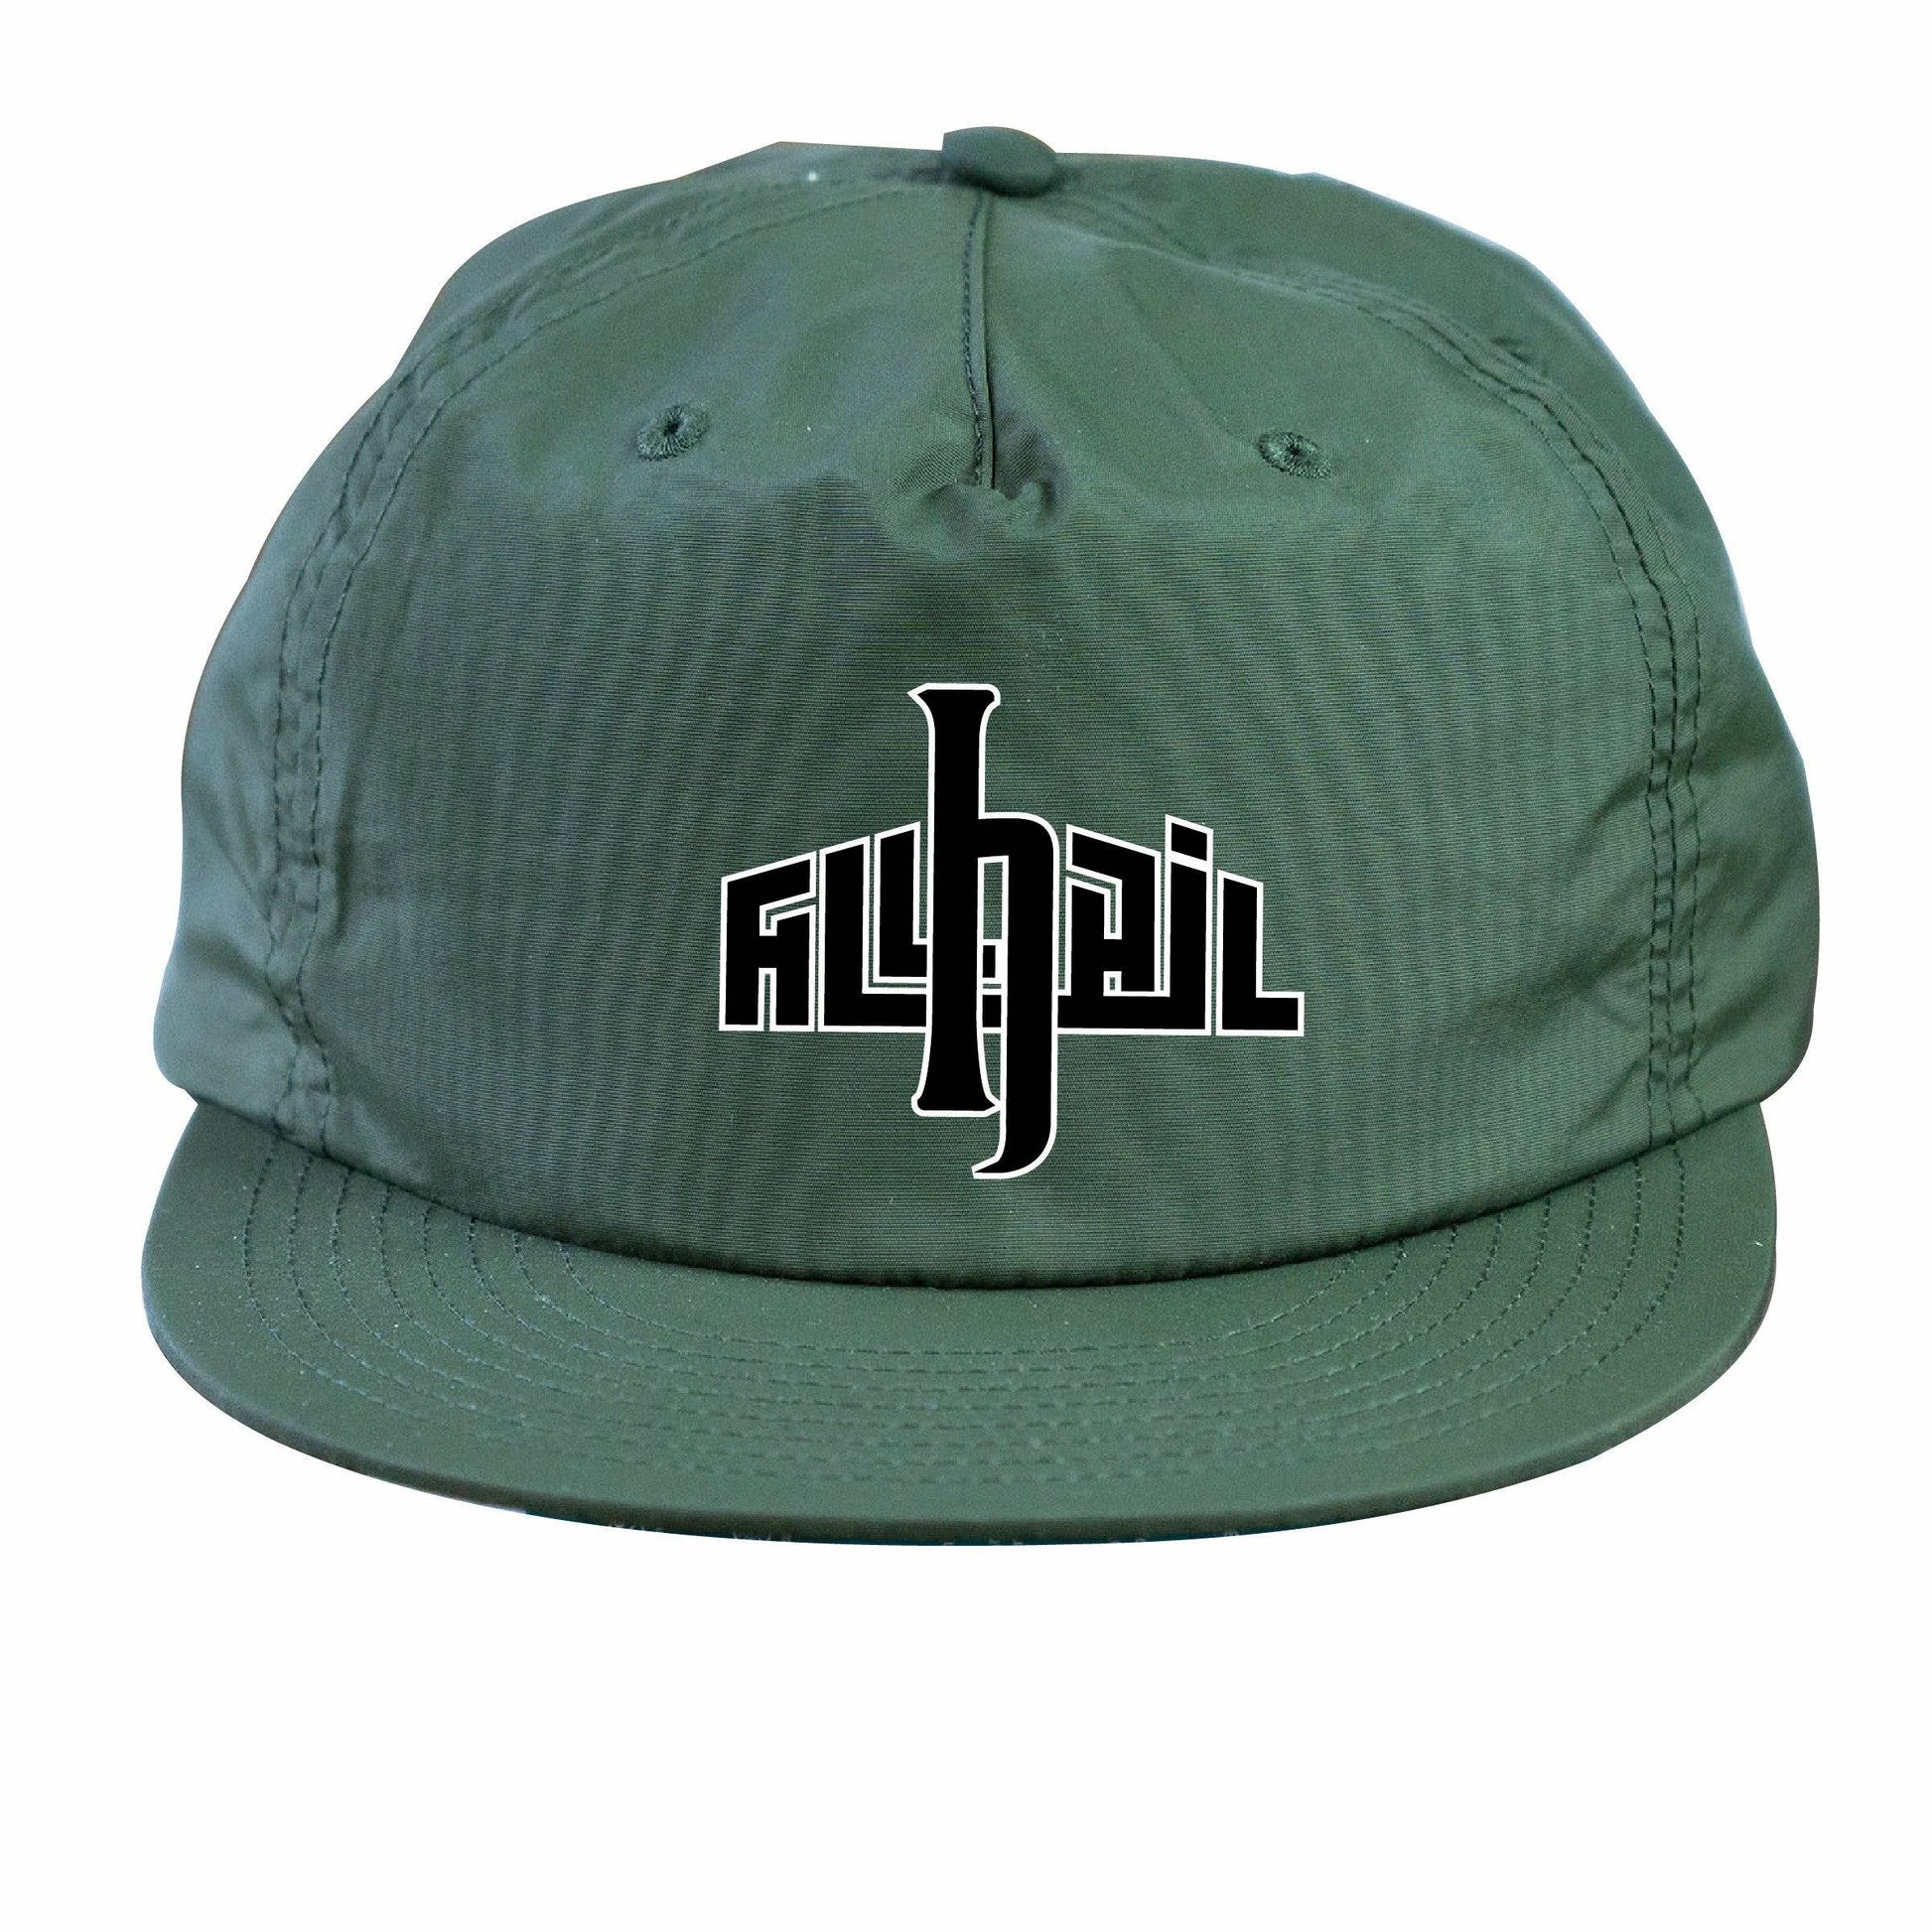 Nylon Cap - Emblem - Army